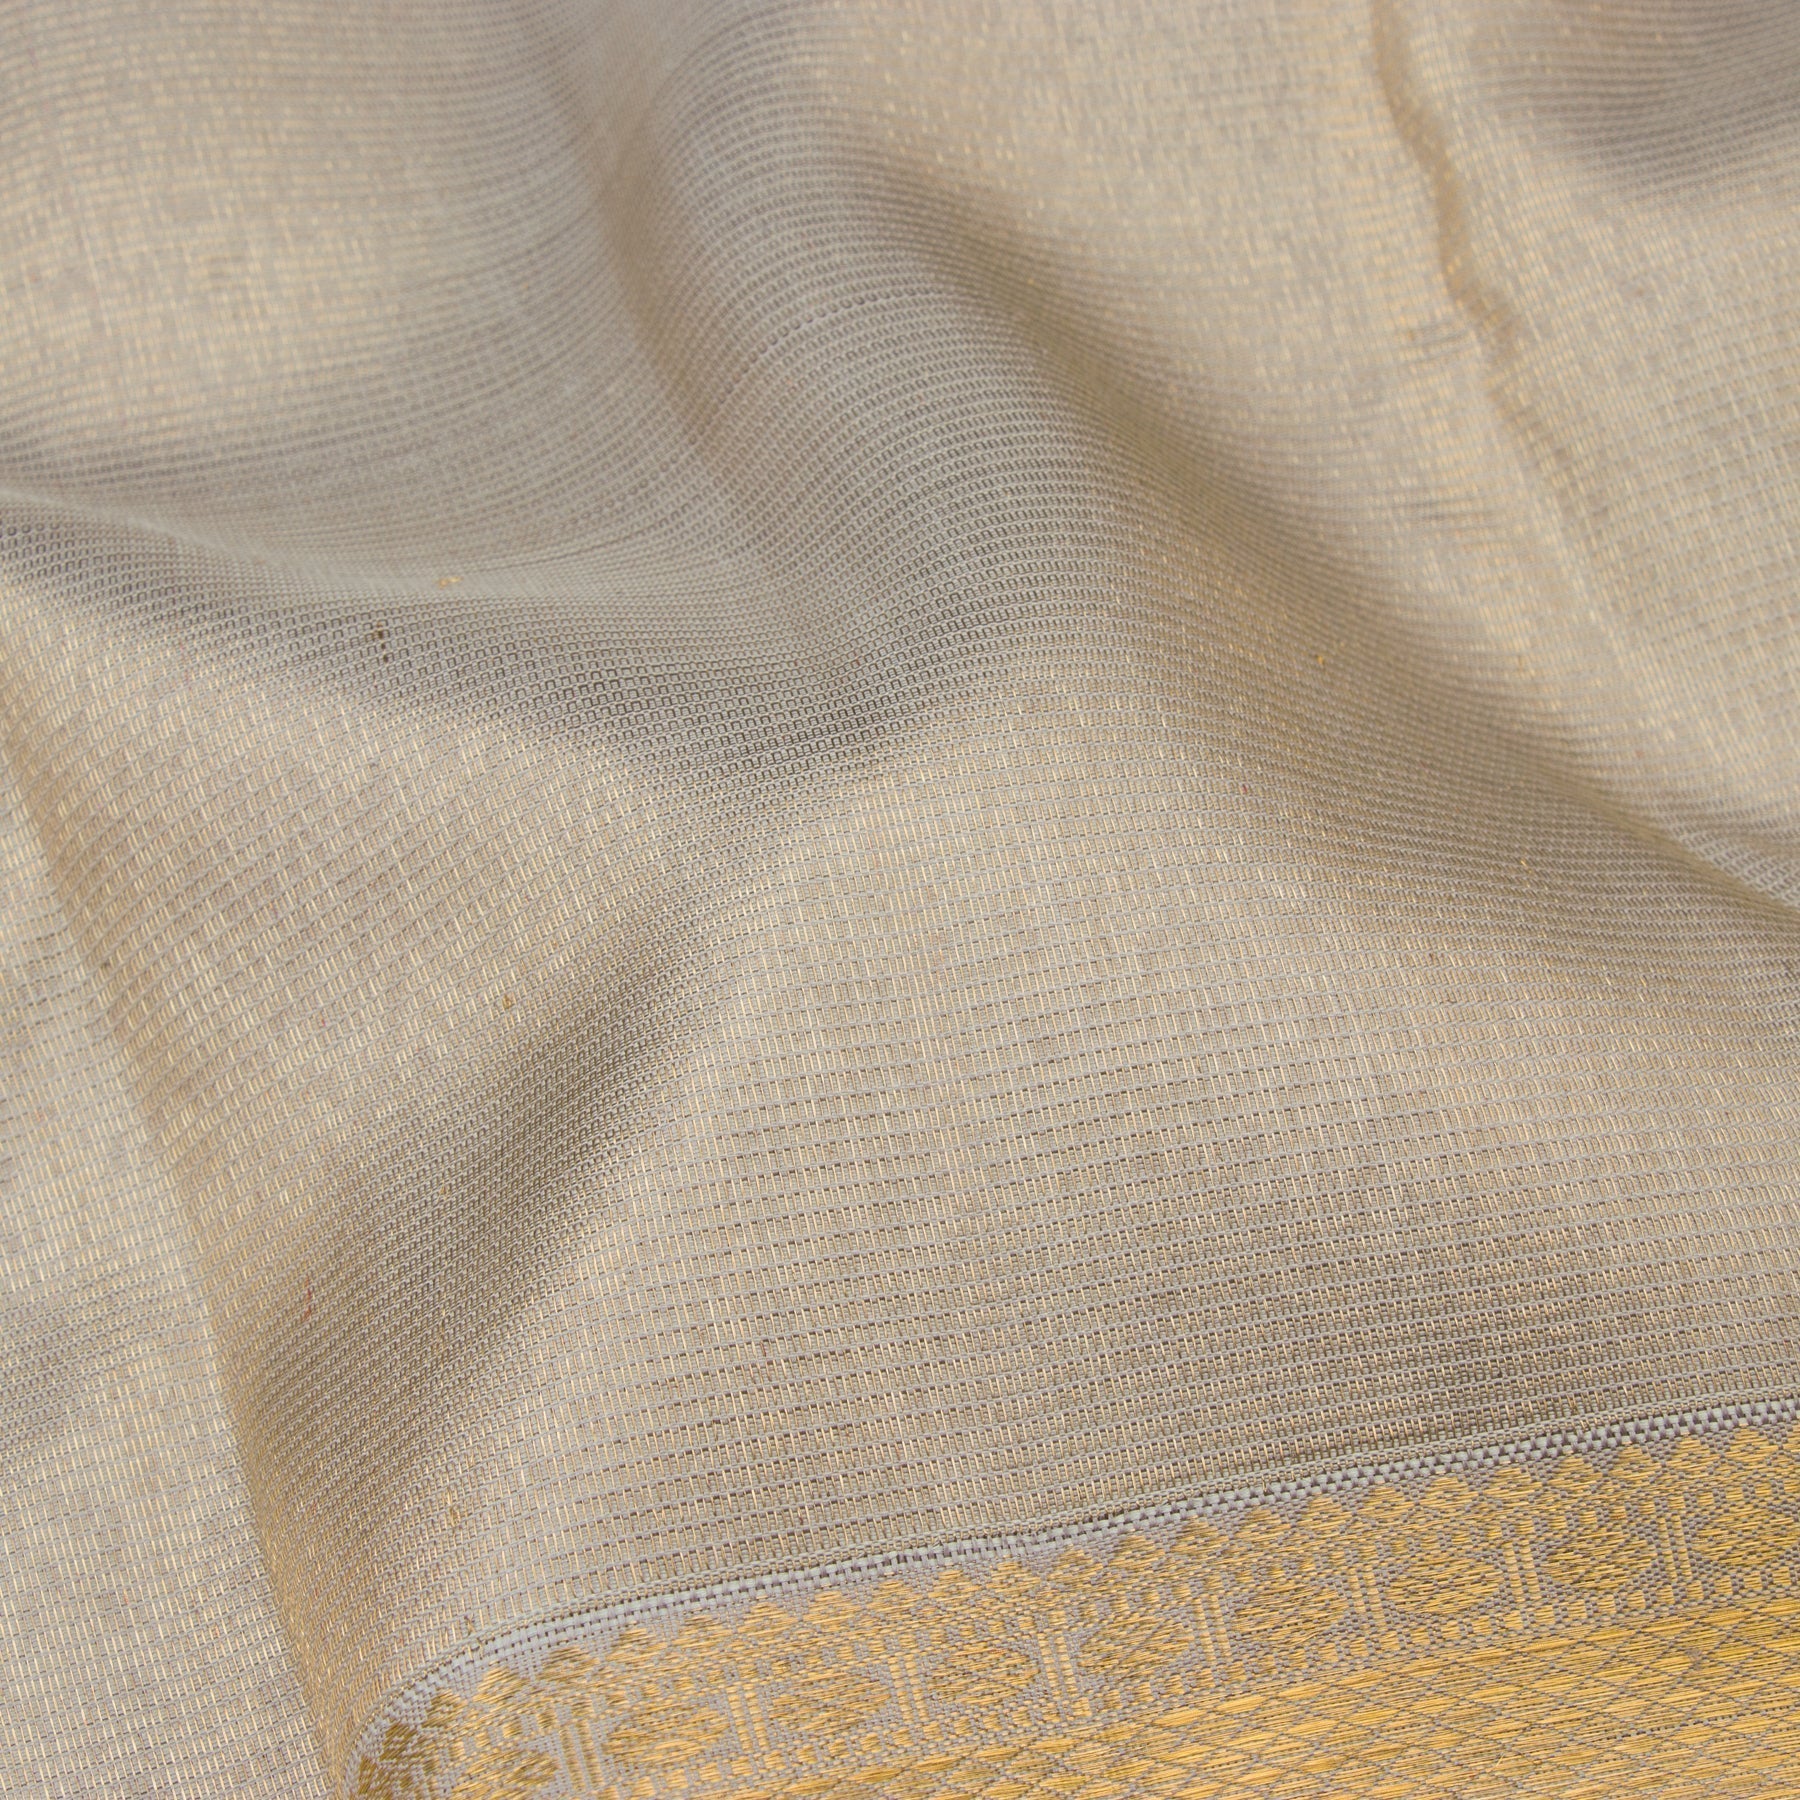 Kanakavalli Kanjivaram Silk Sari 22-599-HS001-05407 - Fabric View